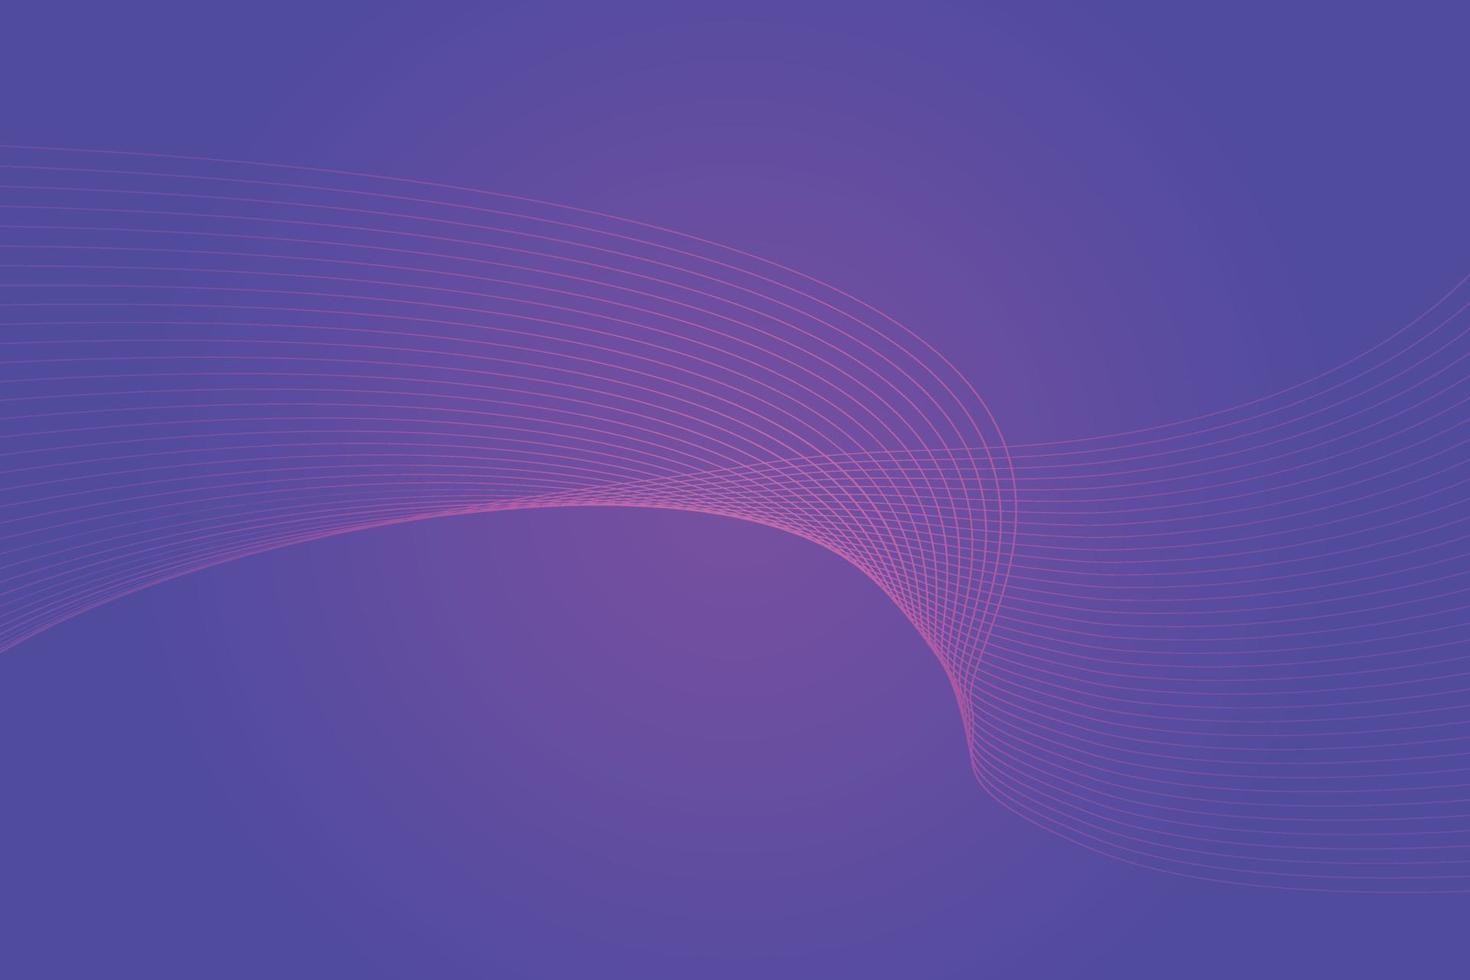 fondo abstracto con líneas onduladas de colores. diseño de fondo degradado púrpura abstracto vector